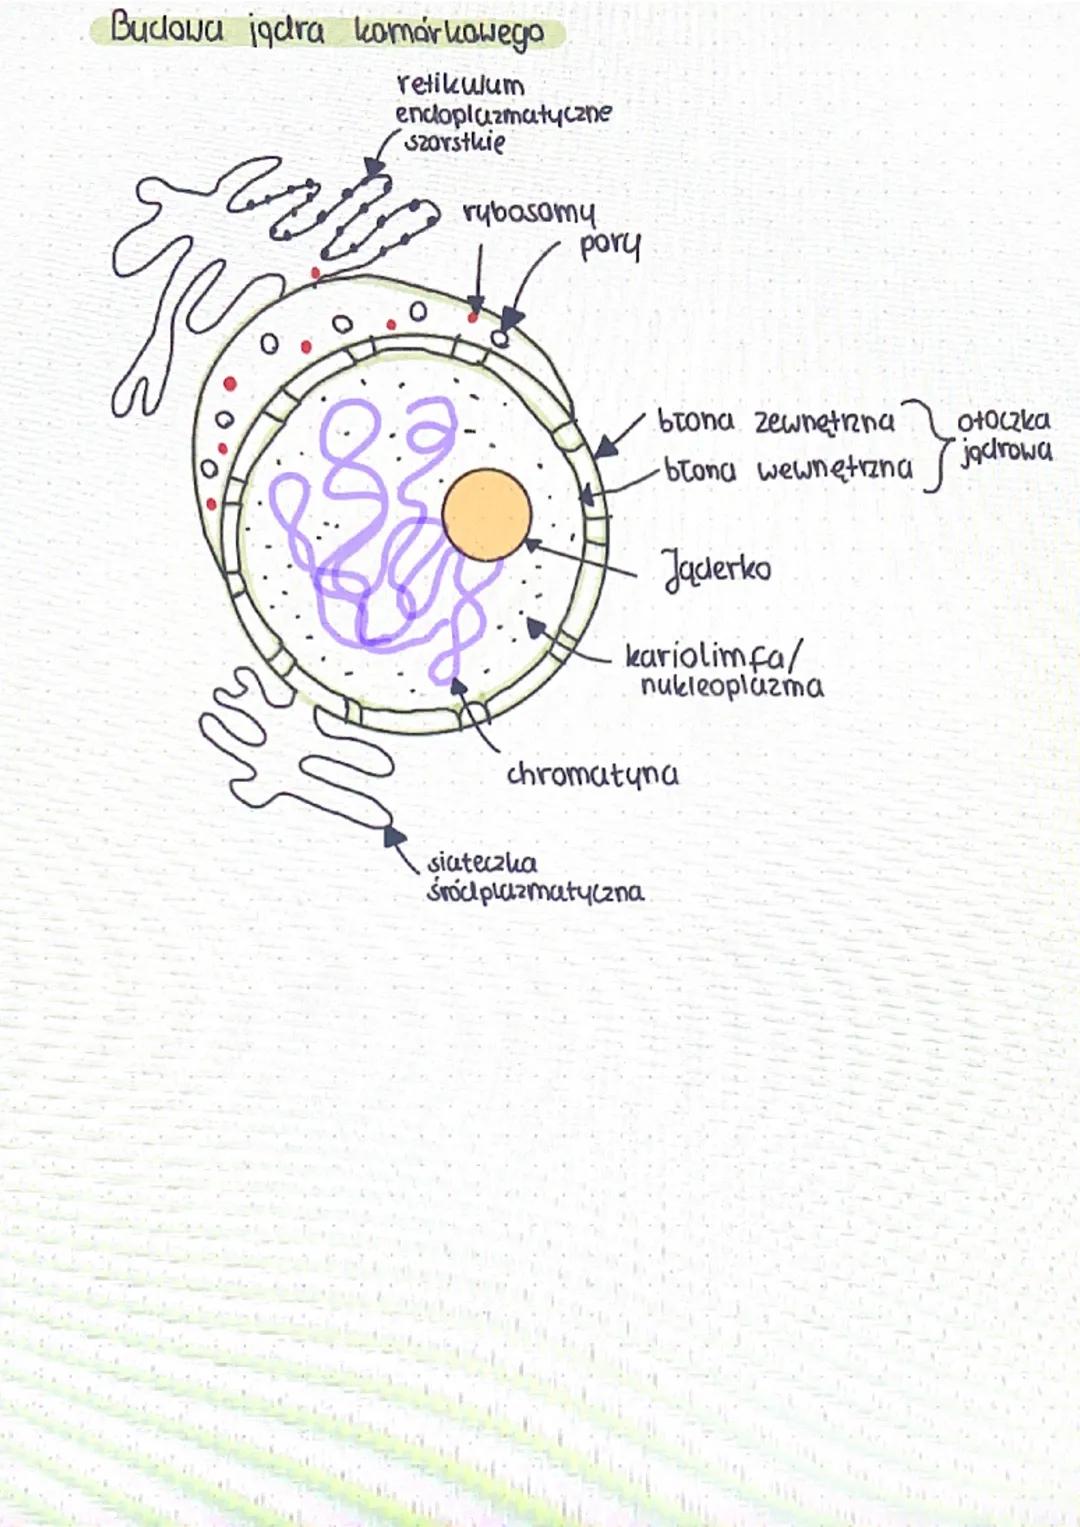 bosom
parat
olgiego
ua
aparat
Golgiego
perolsysam
loroplast
·Pesc
centrosom perousysom
Komórka roślinna
cytozal
20.
mitochondrium
mitochondr